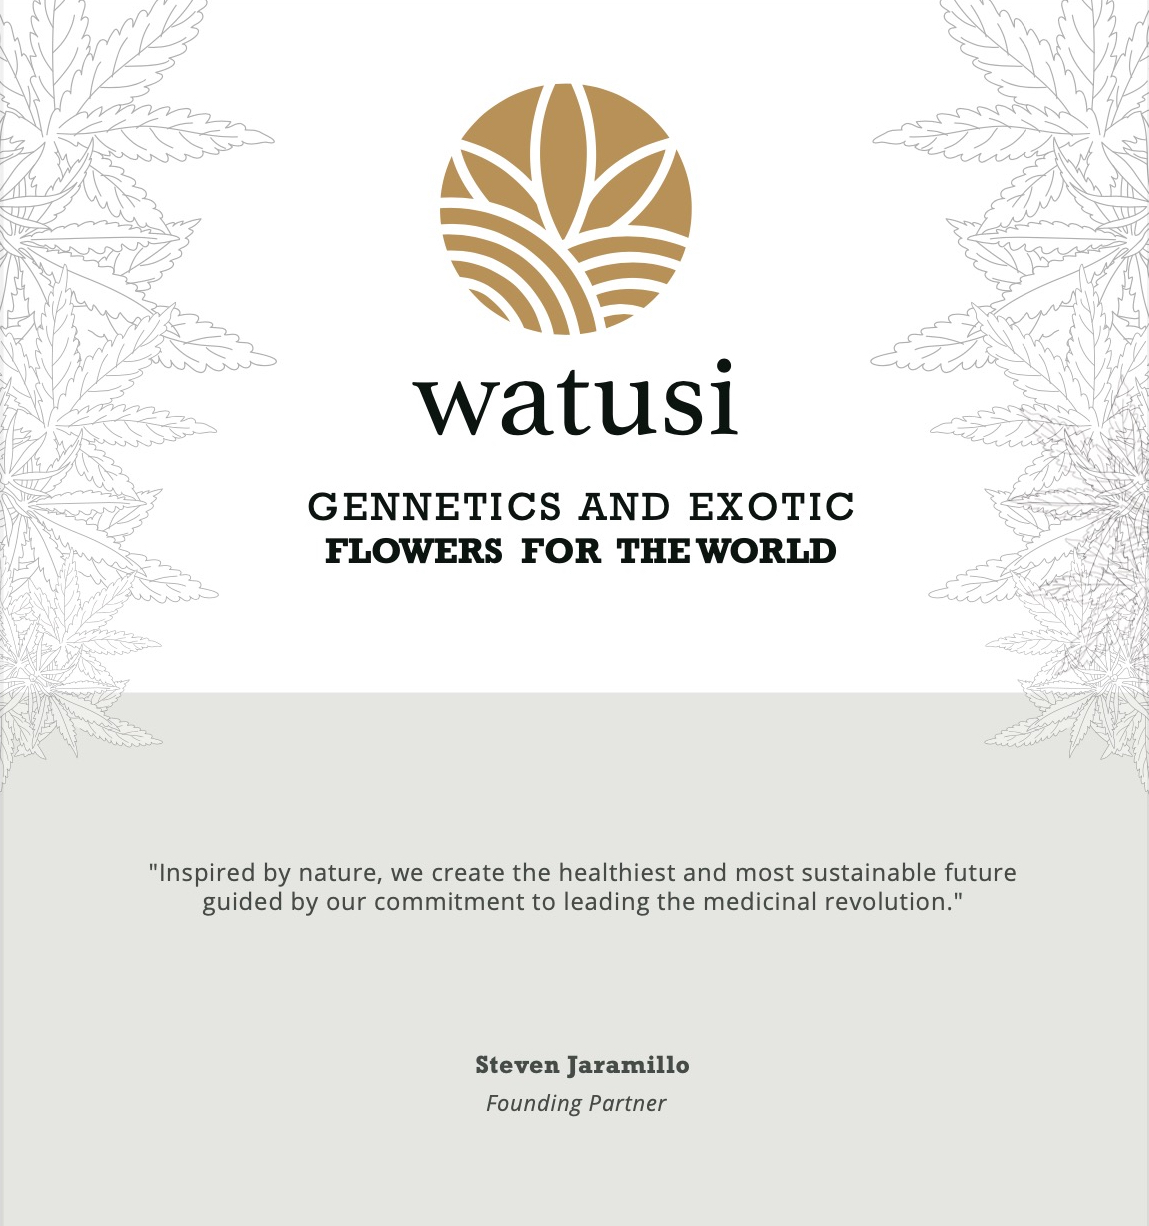 About Watusi